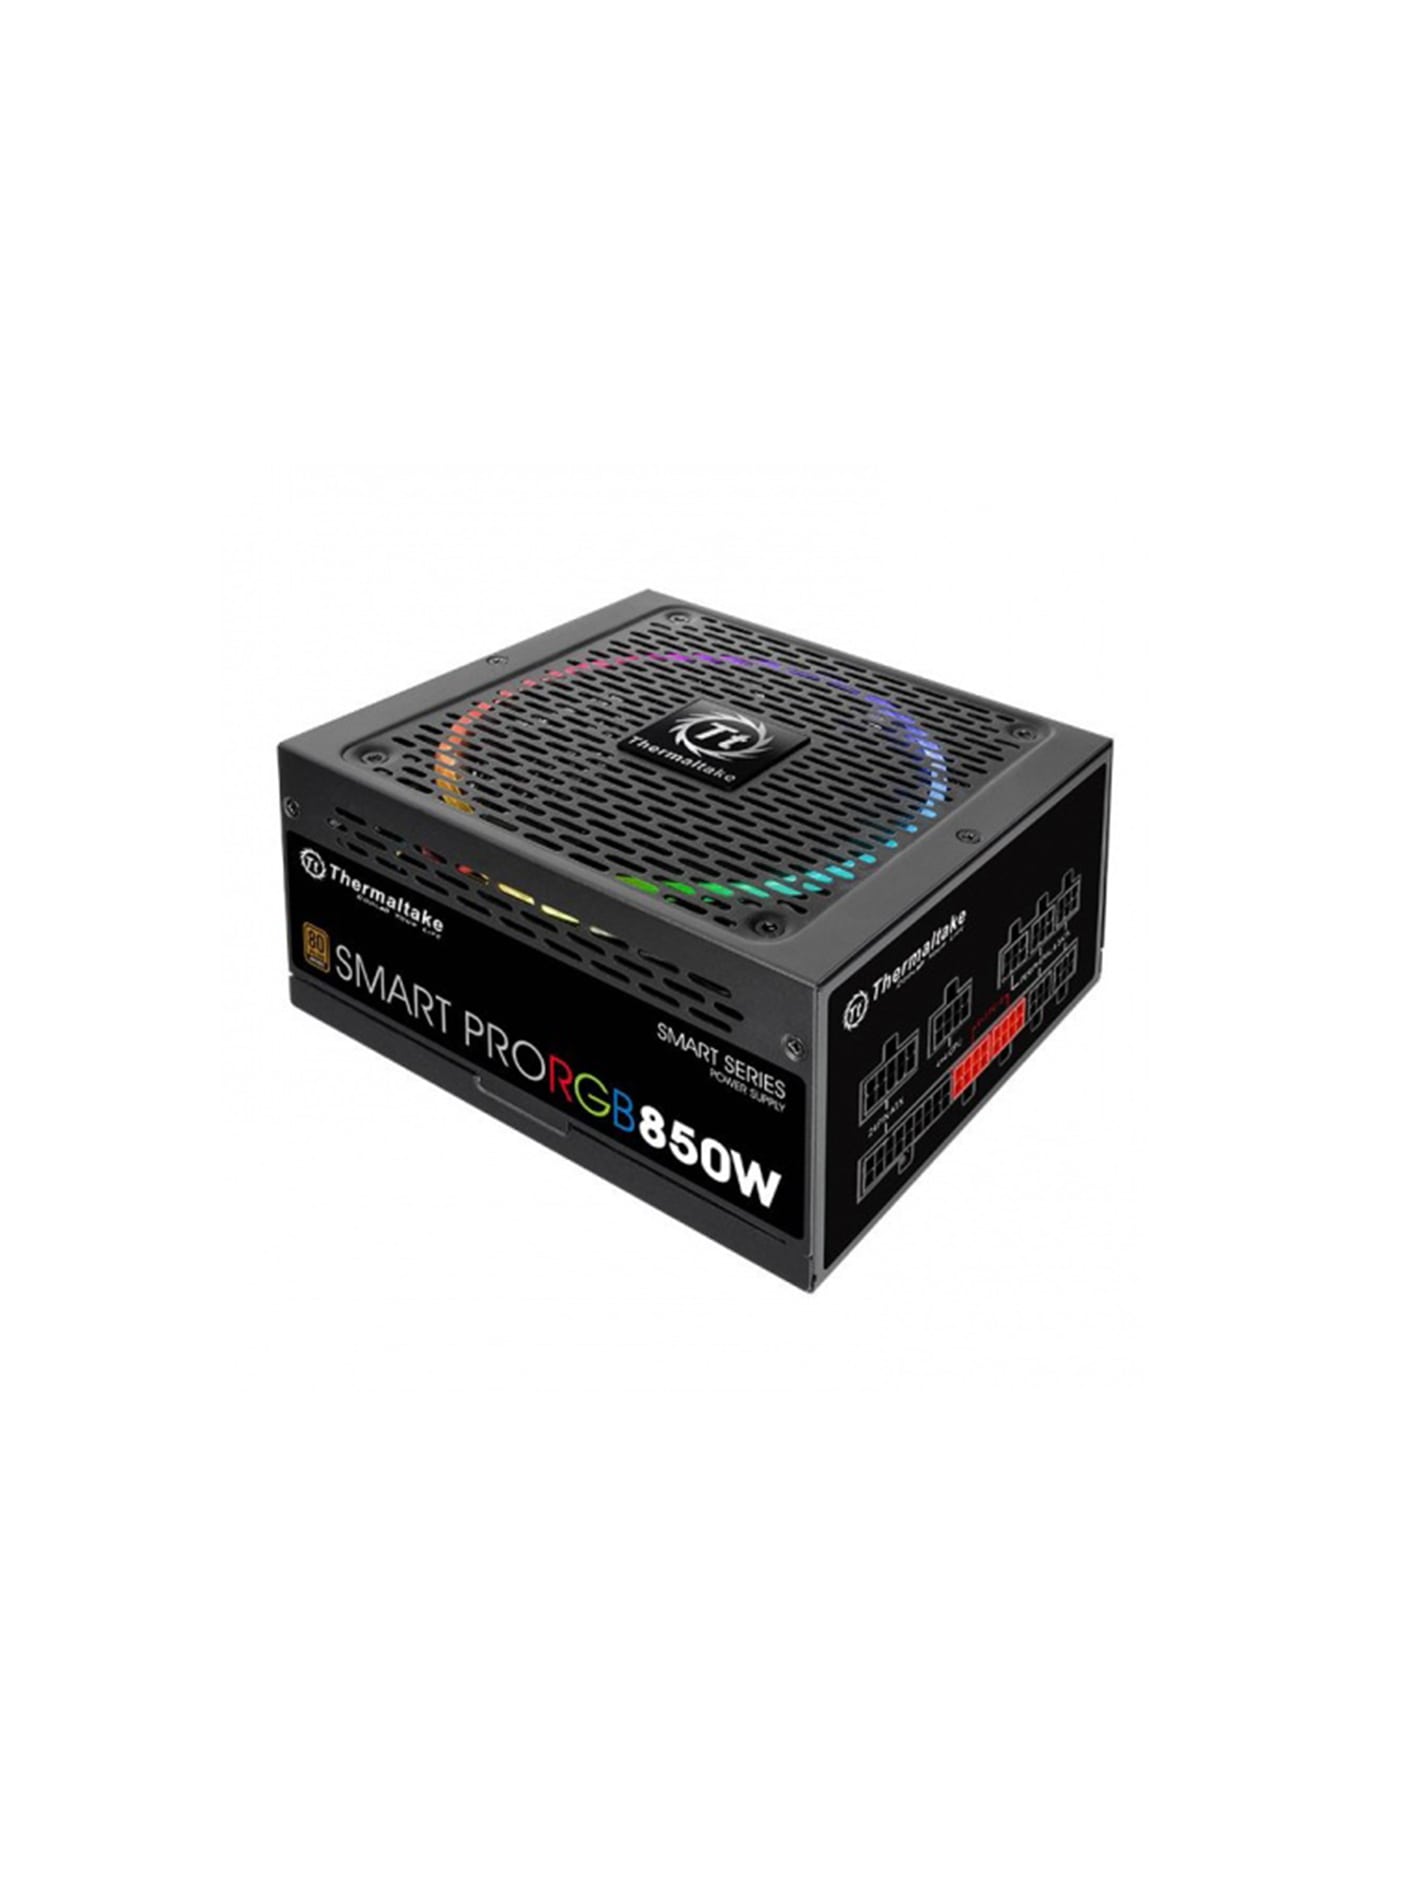  پاور 850 وات Thermaltake مدل Smart Pro RGB 850W